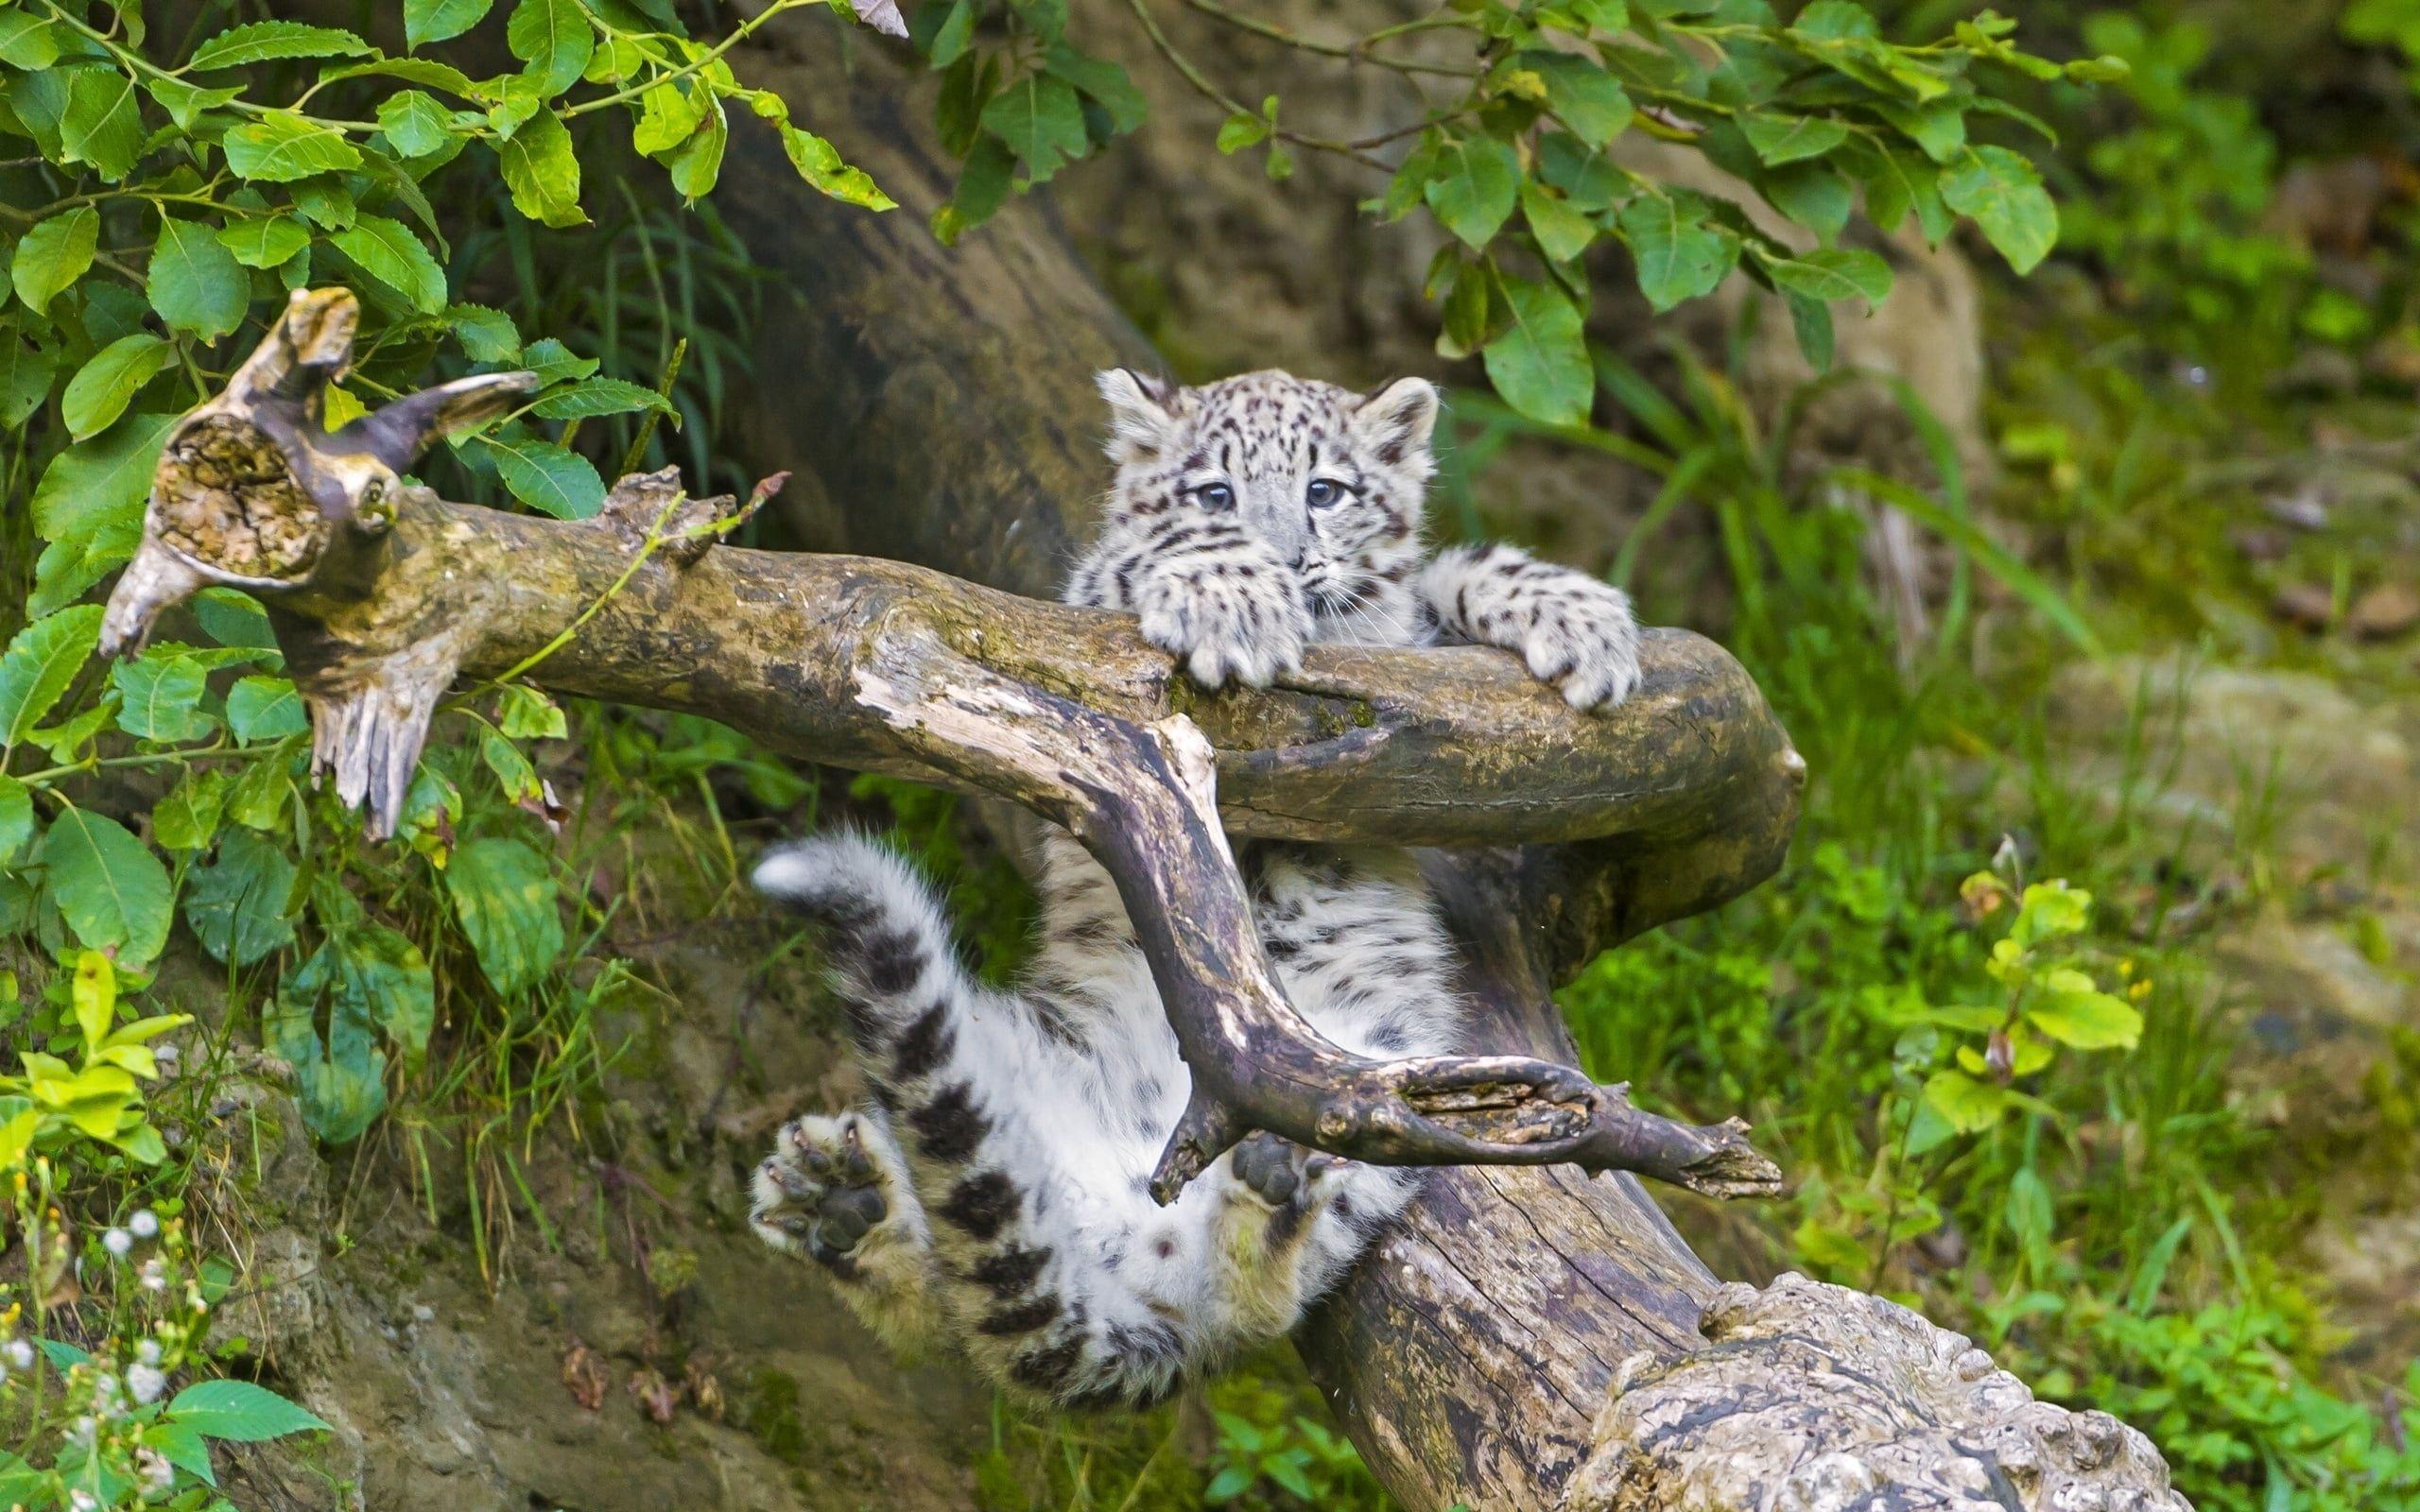 baby jaguar wallpaper